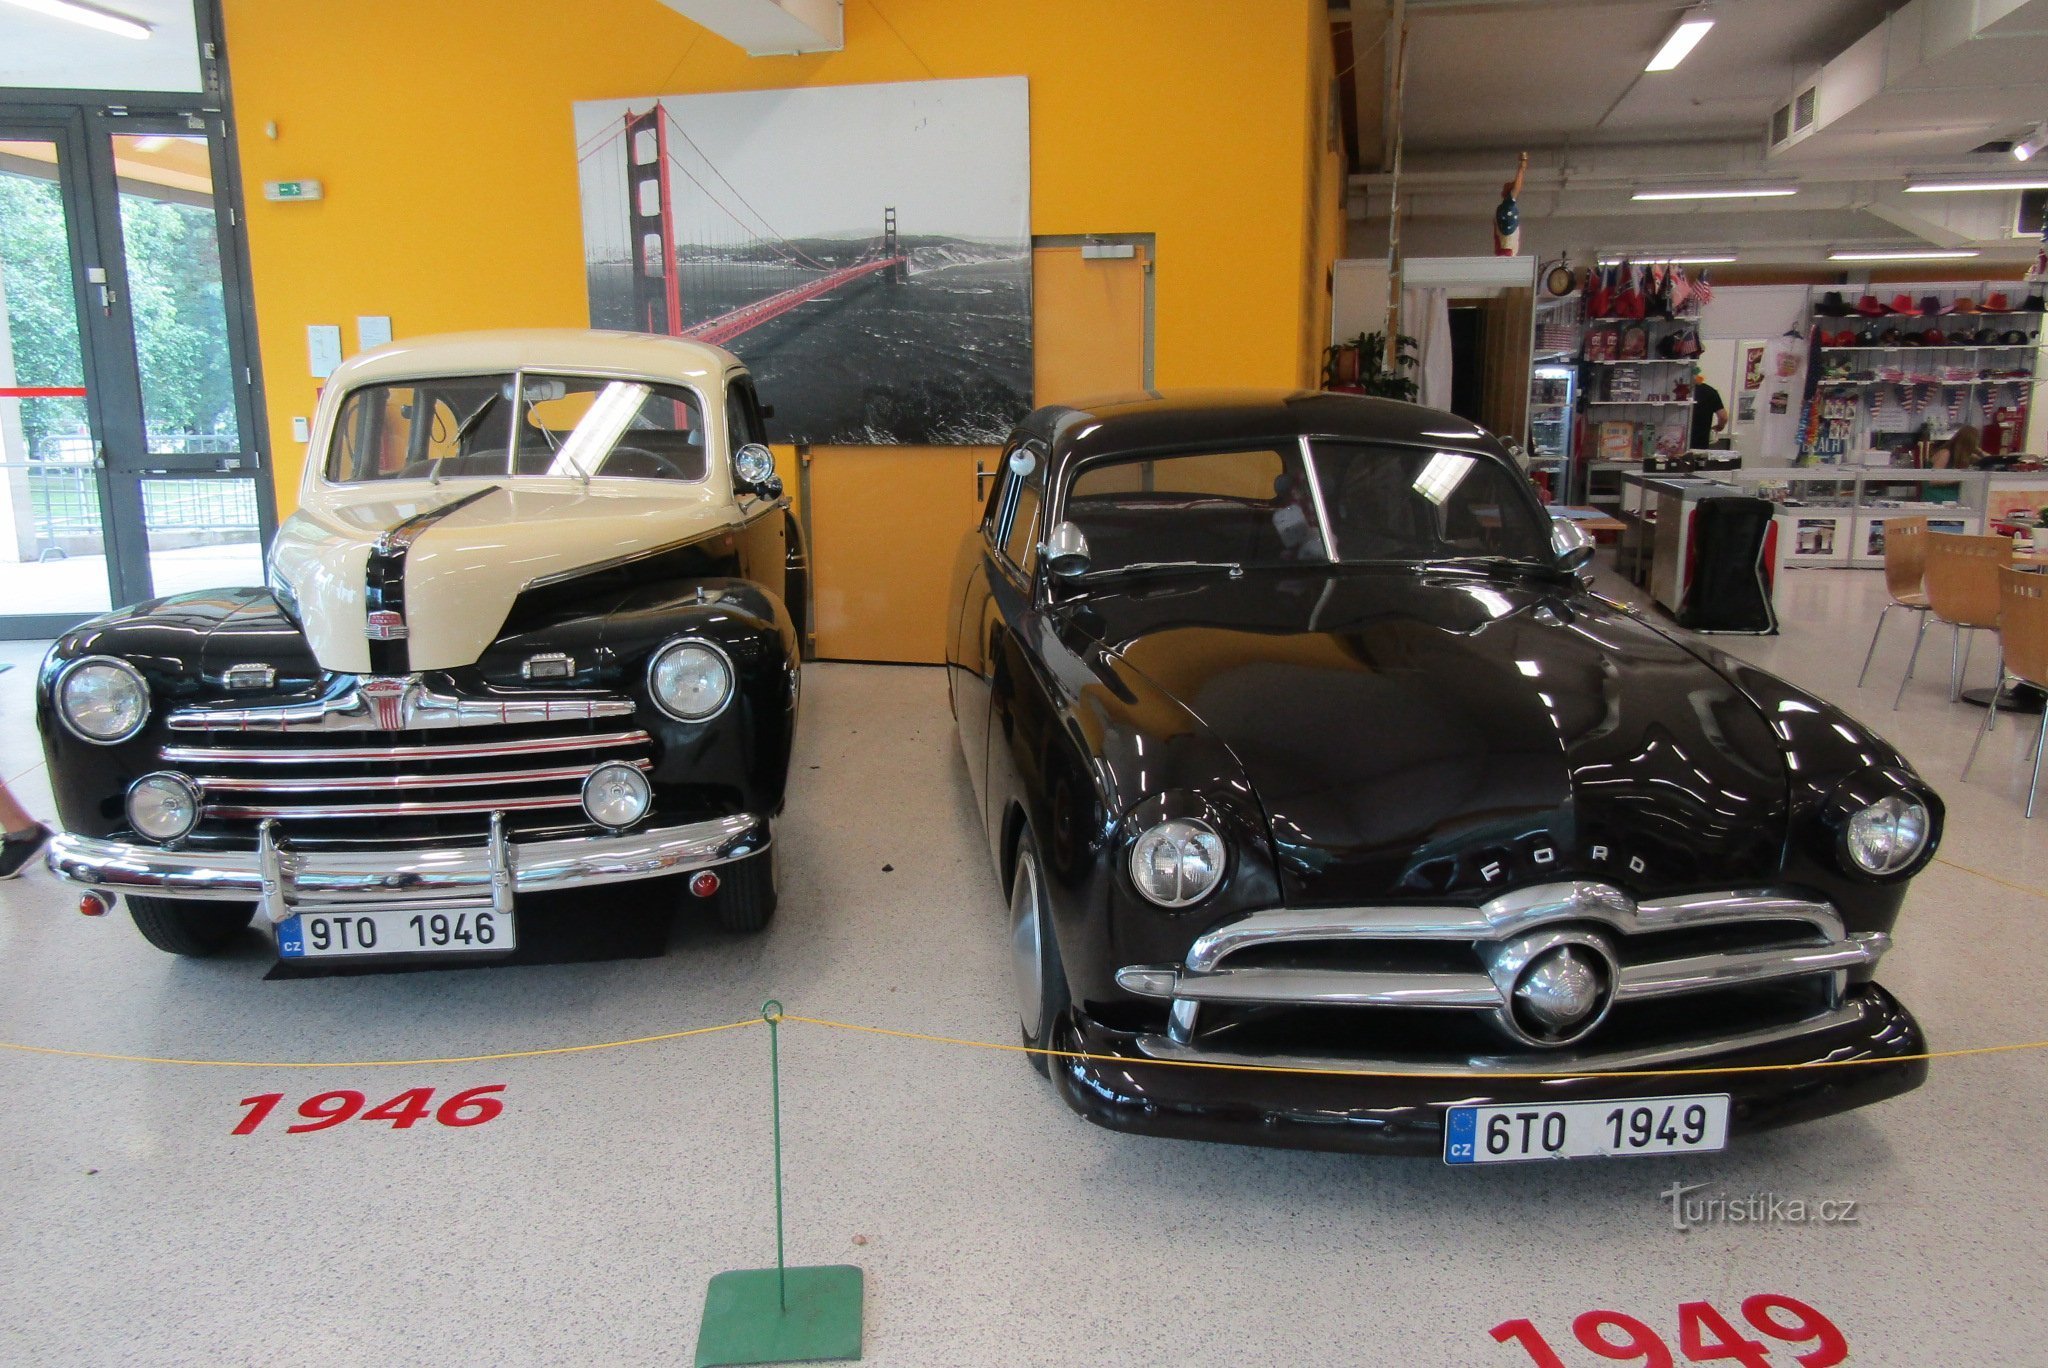 American Classic Cars, Černá Louka kiállítási központ, Ostrava